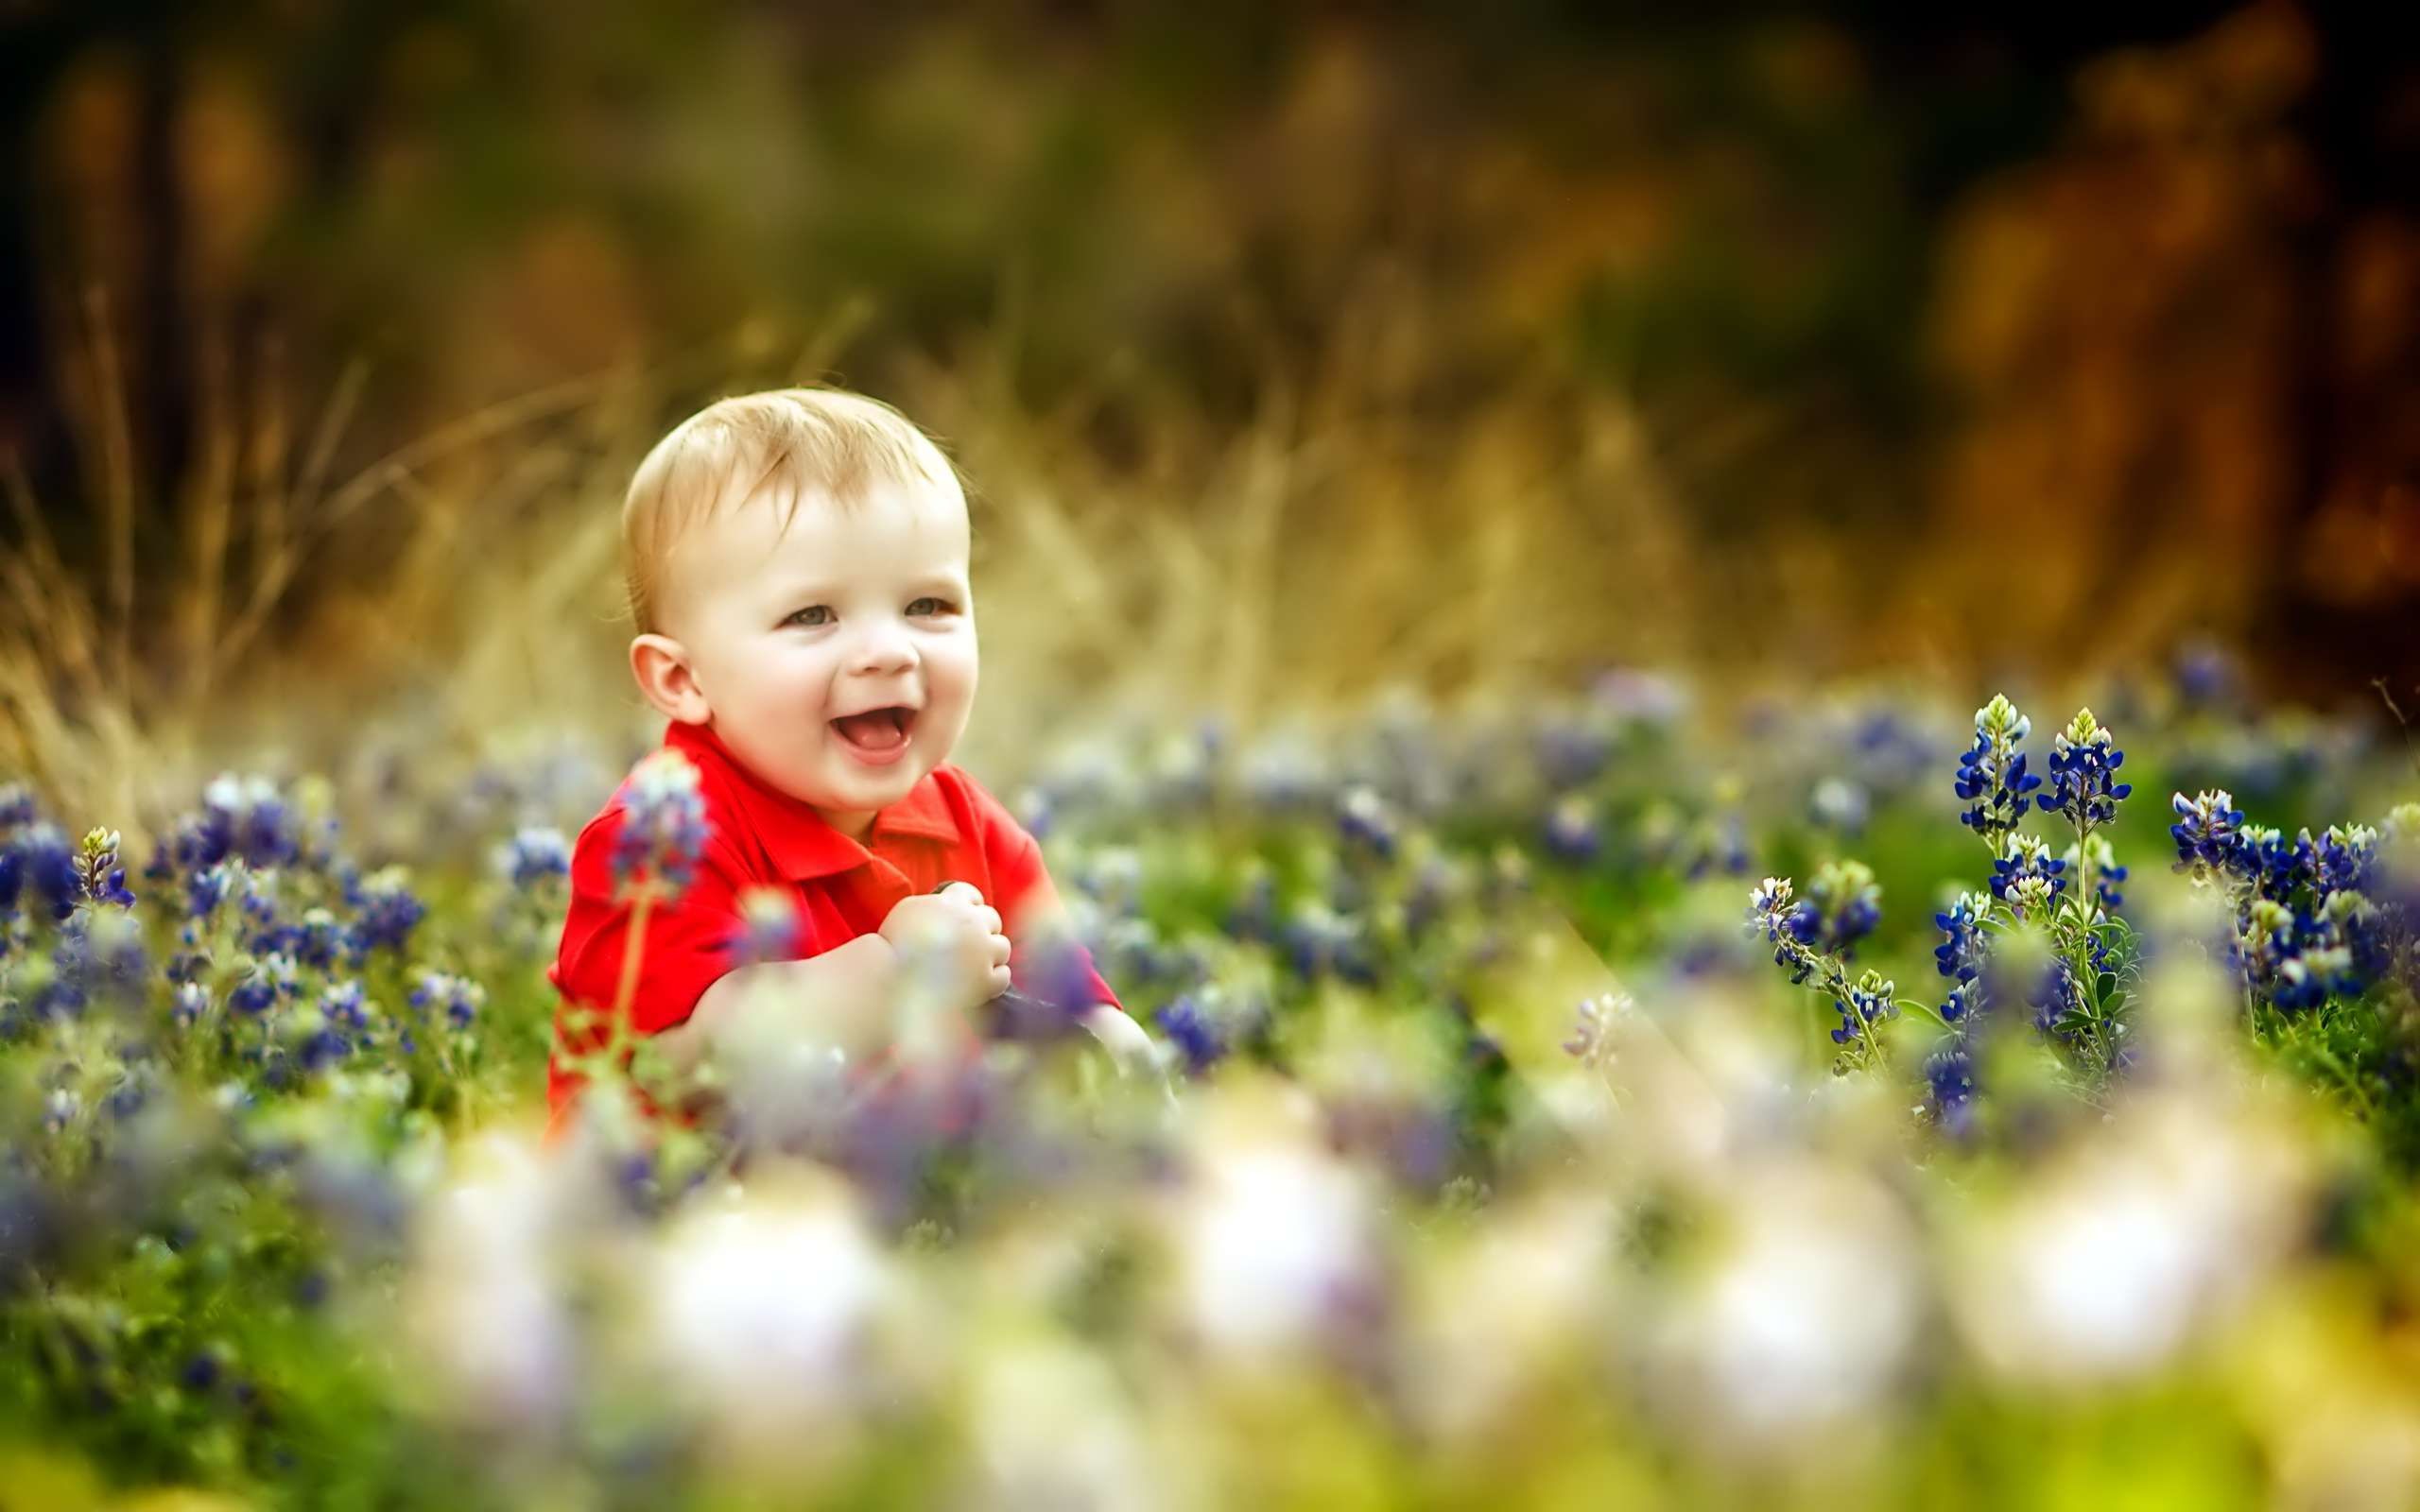 Hãy cùng ngắm nhìn hình ảnh em bé đáng yêu này và cảm nhận sự tình cảm và hạnh phúc thấm đầy. Những nụ cười tuyệt đẹp và sự chân thành của em bé sẽ khiến bạn đắm chìm trong niềm hạnh phúc.